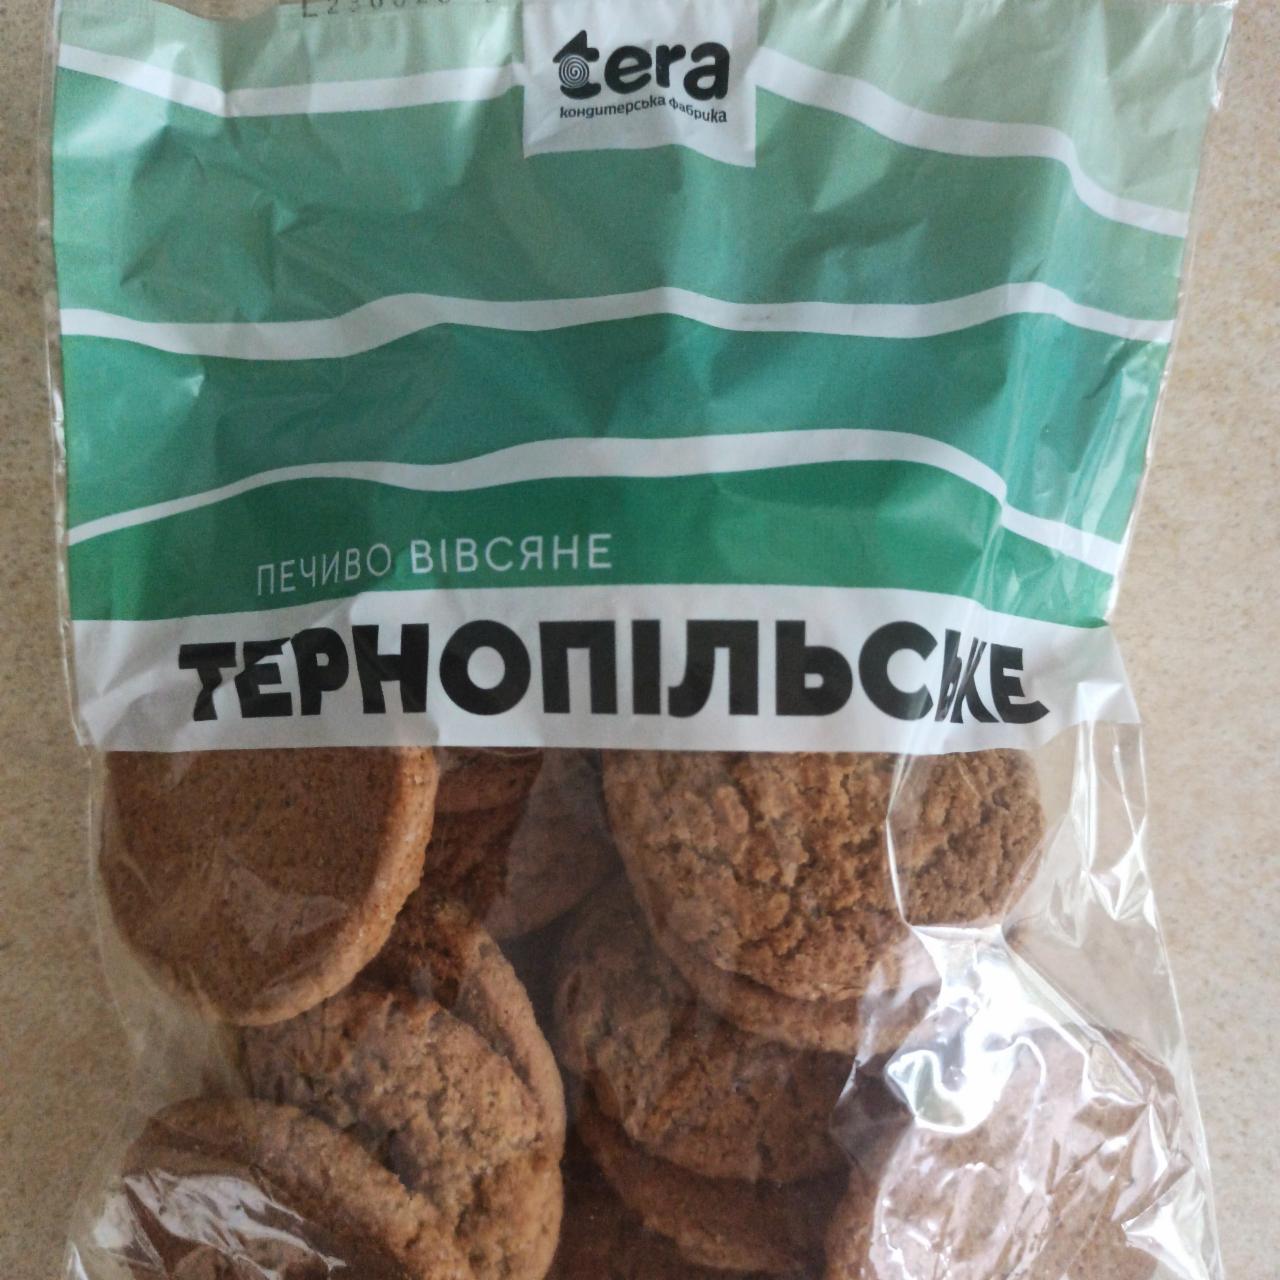 Фото - Печиво вівсяне Тернопільське Tera